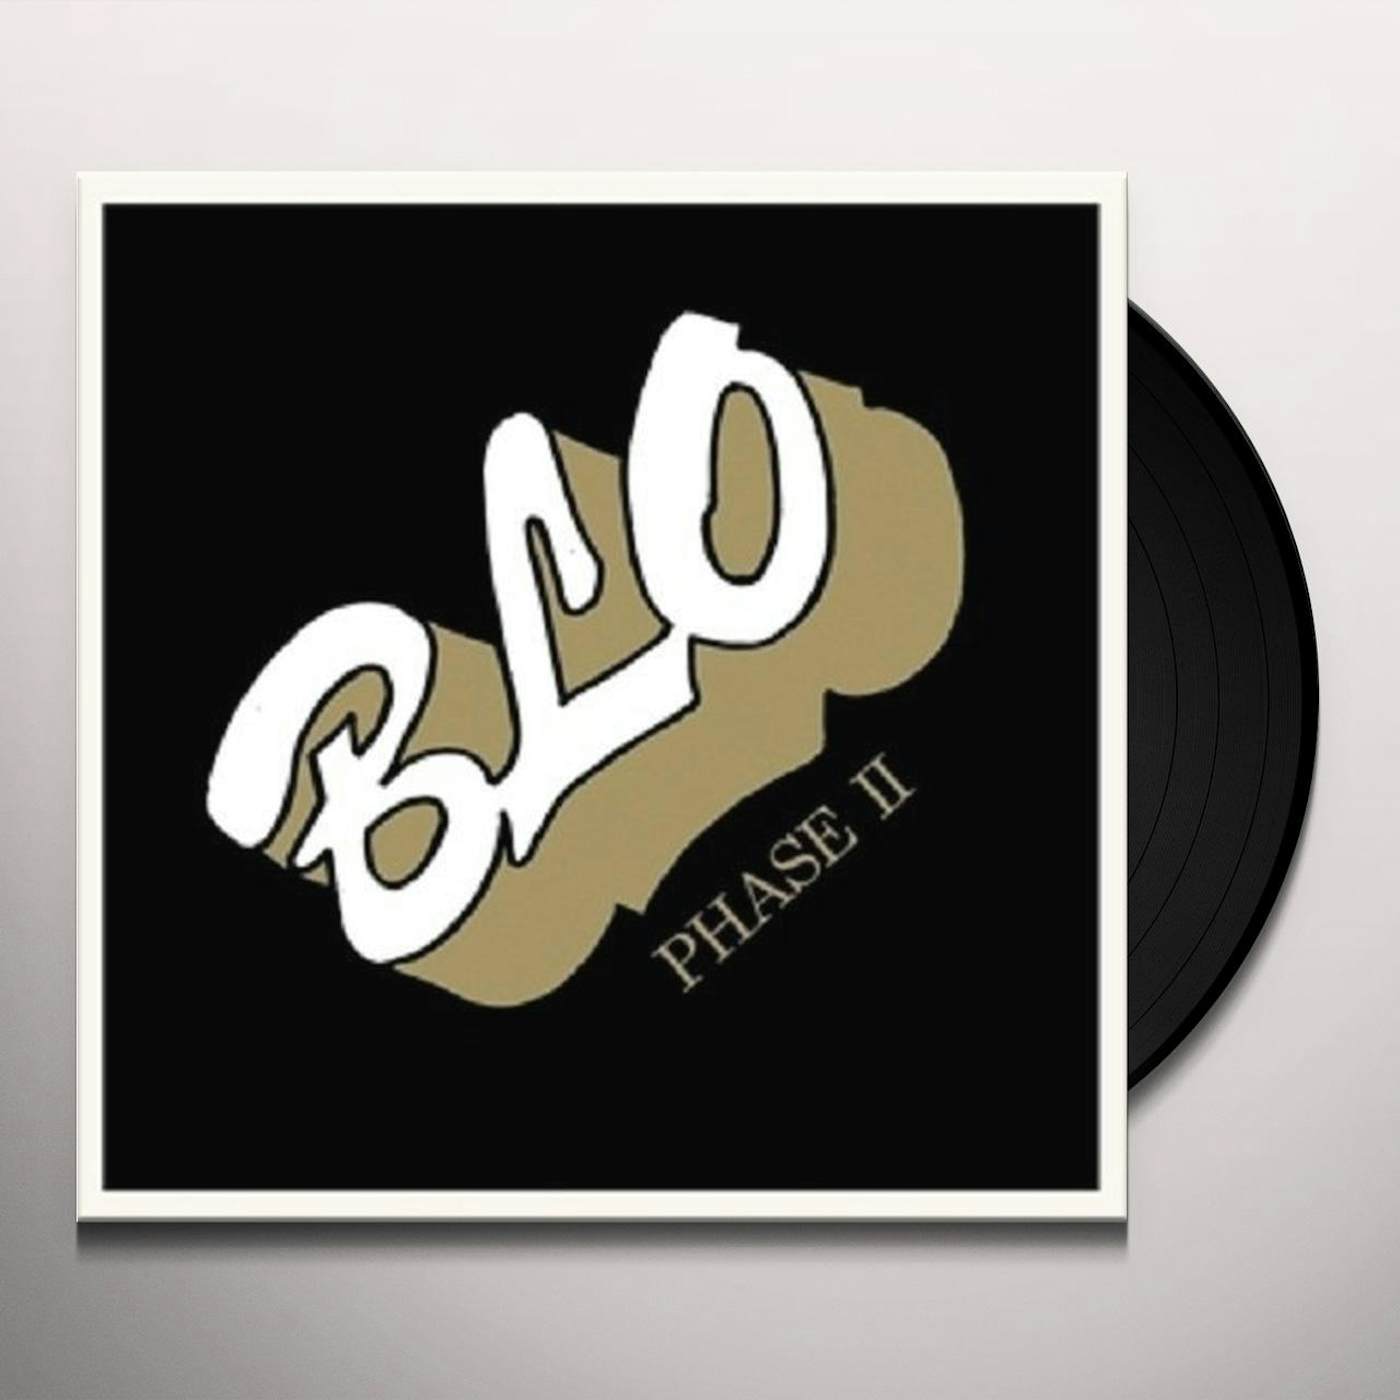 BLO PHASE II Vinyl Record - Remastered